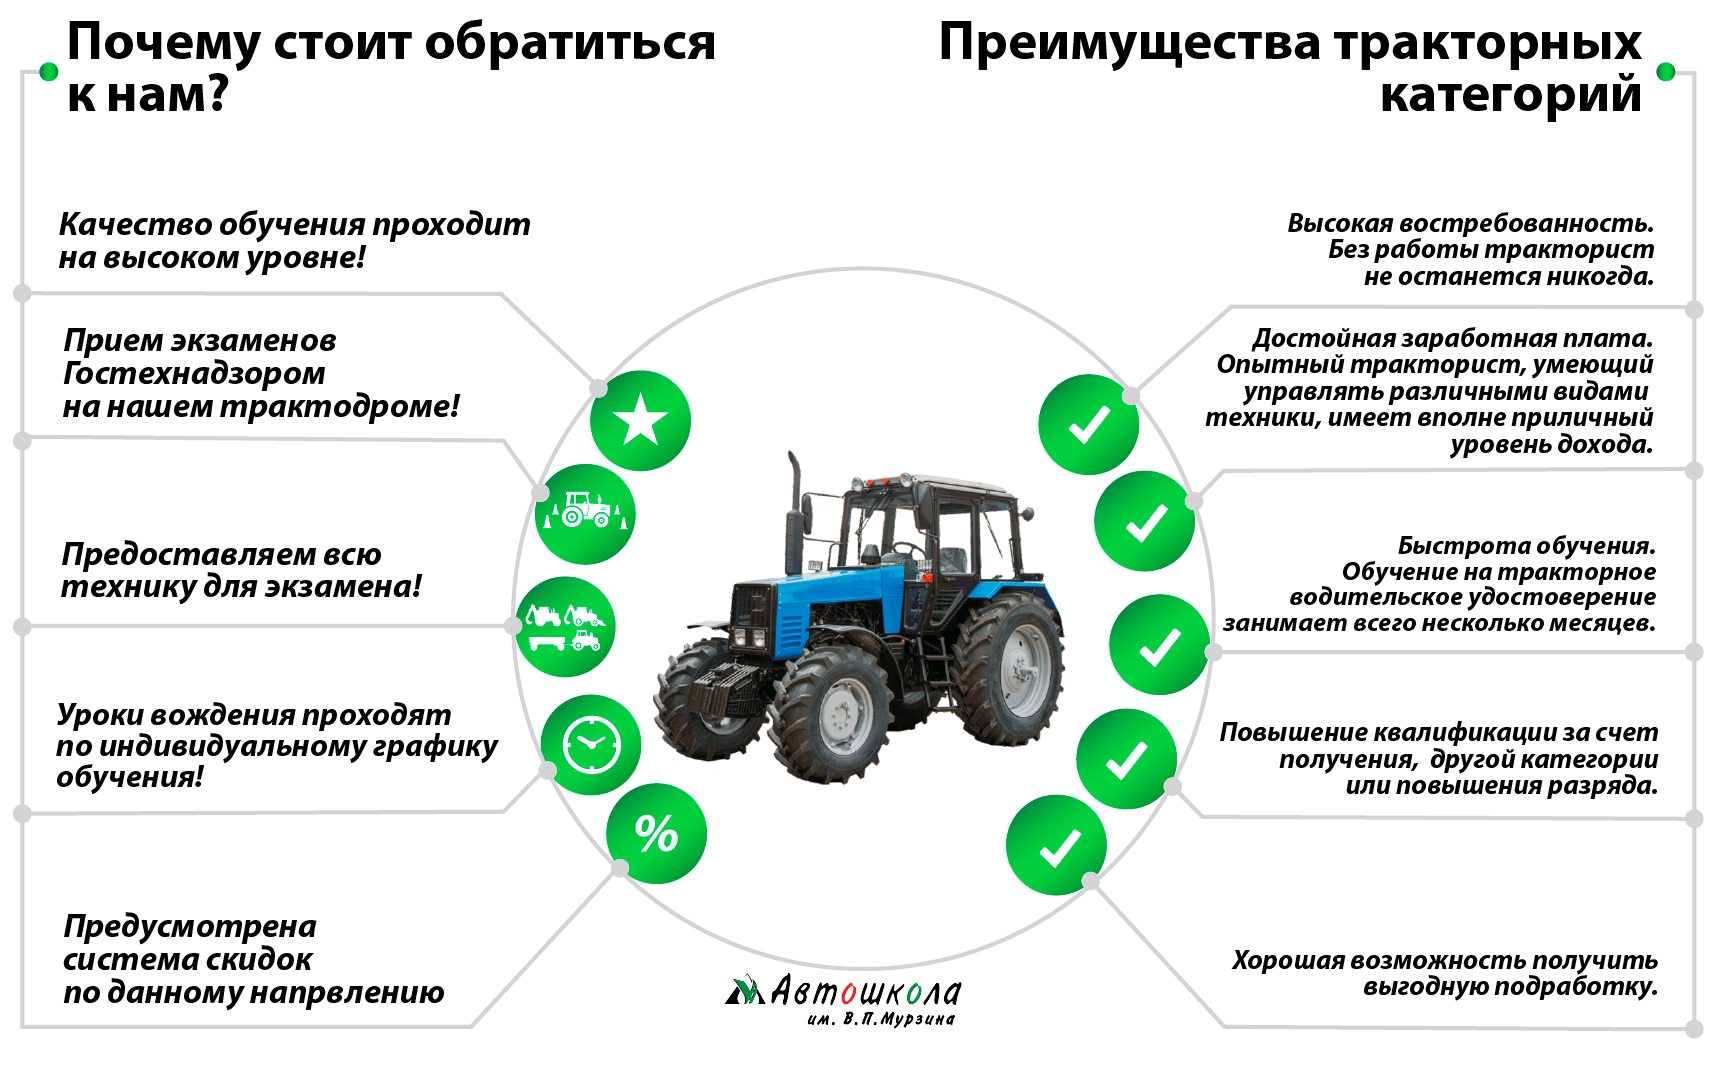 Тракторные правила